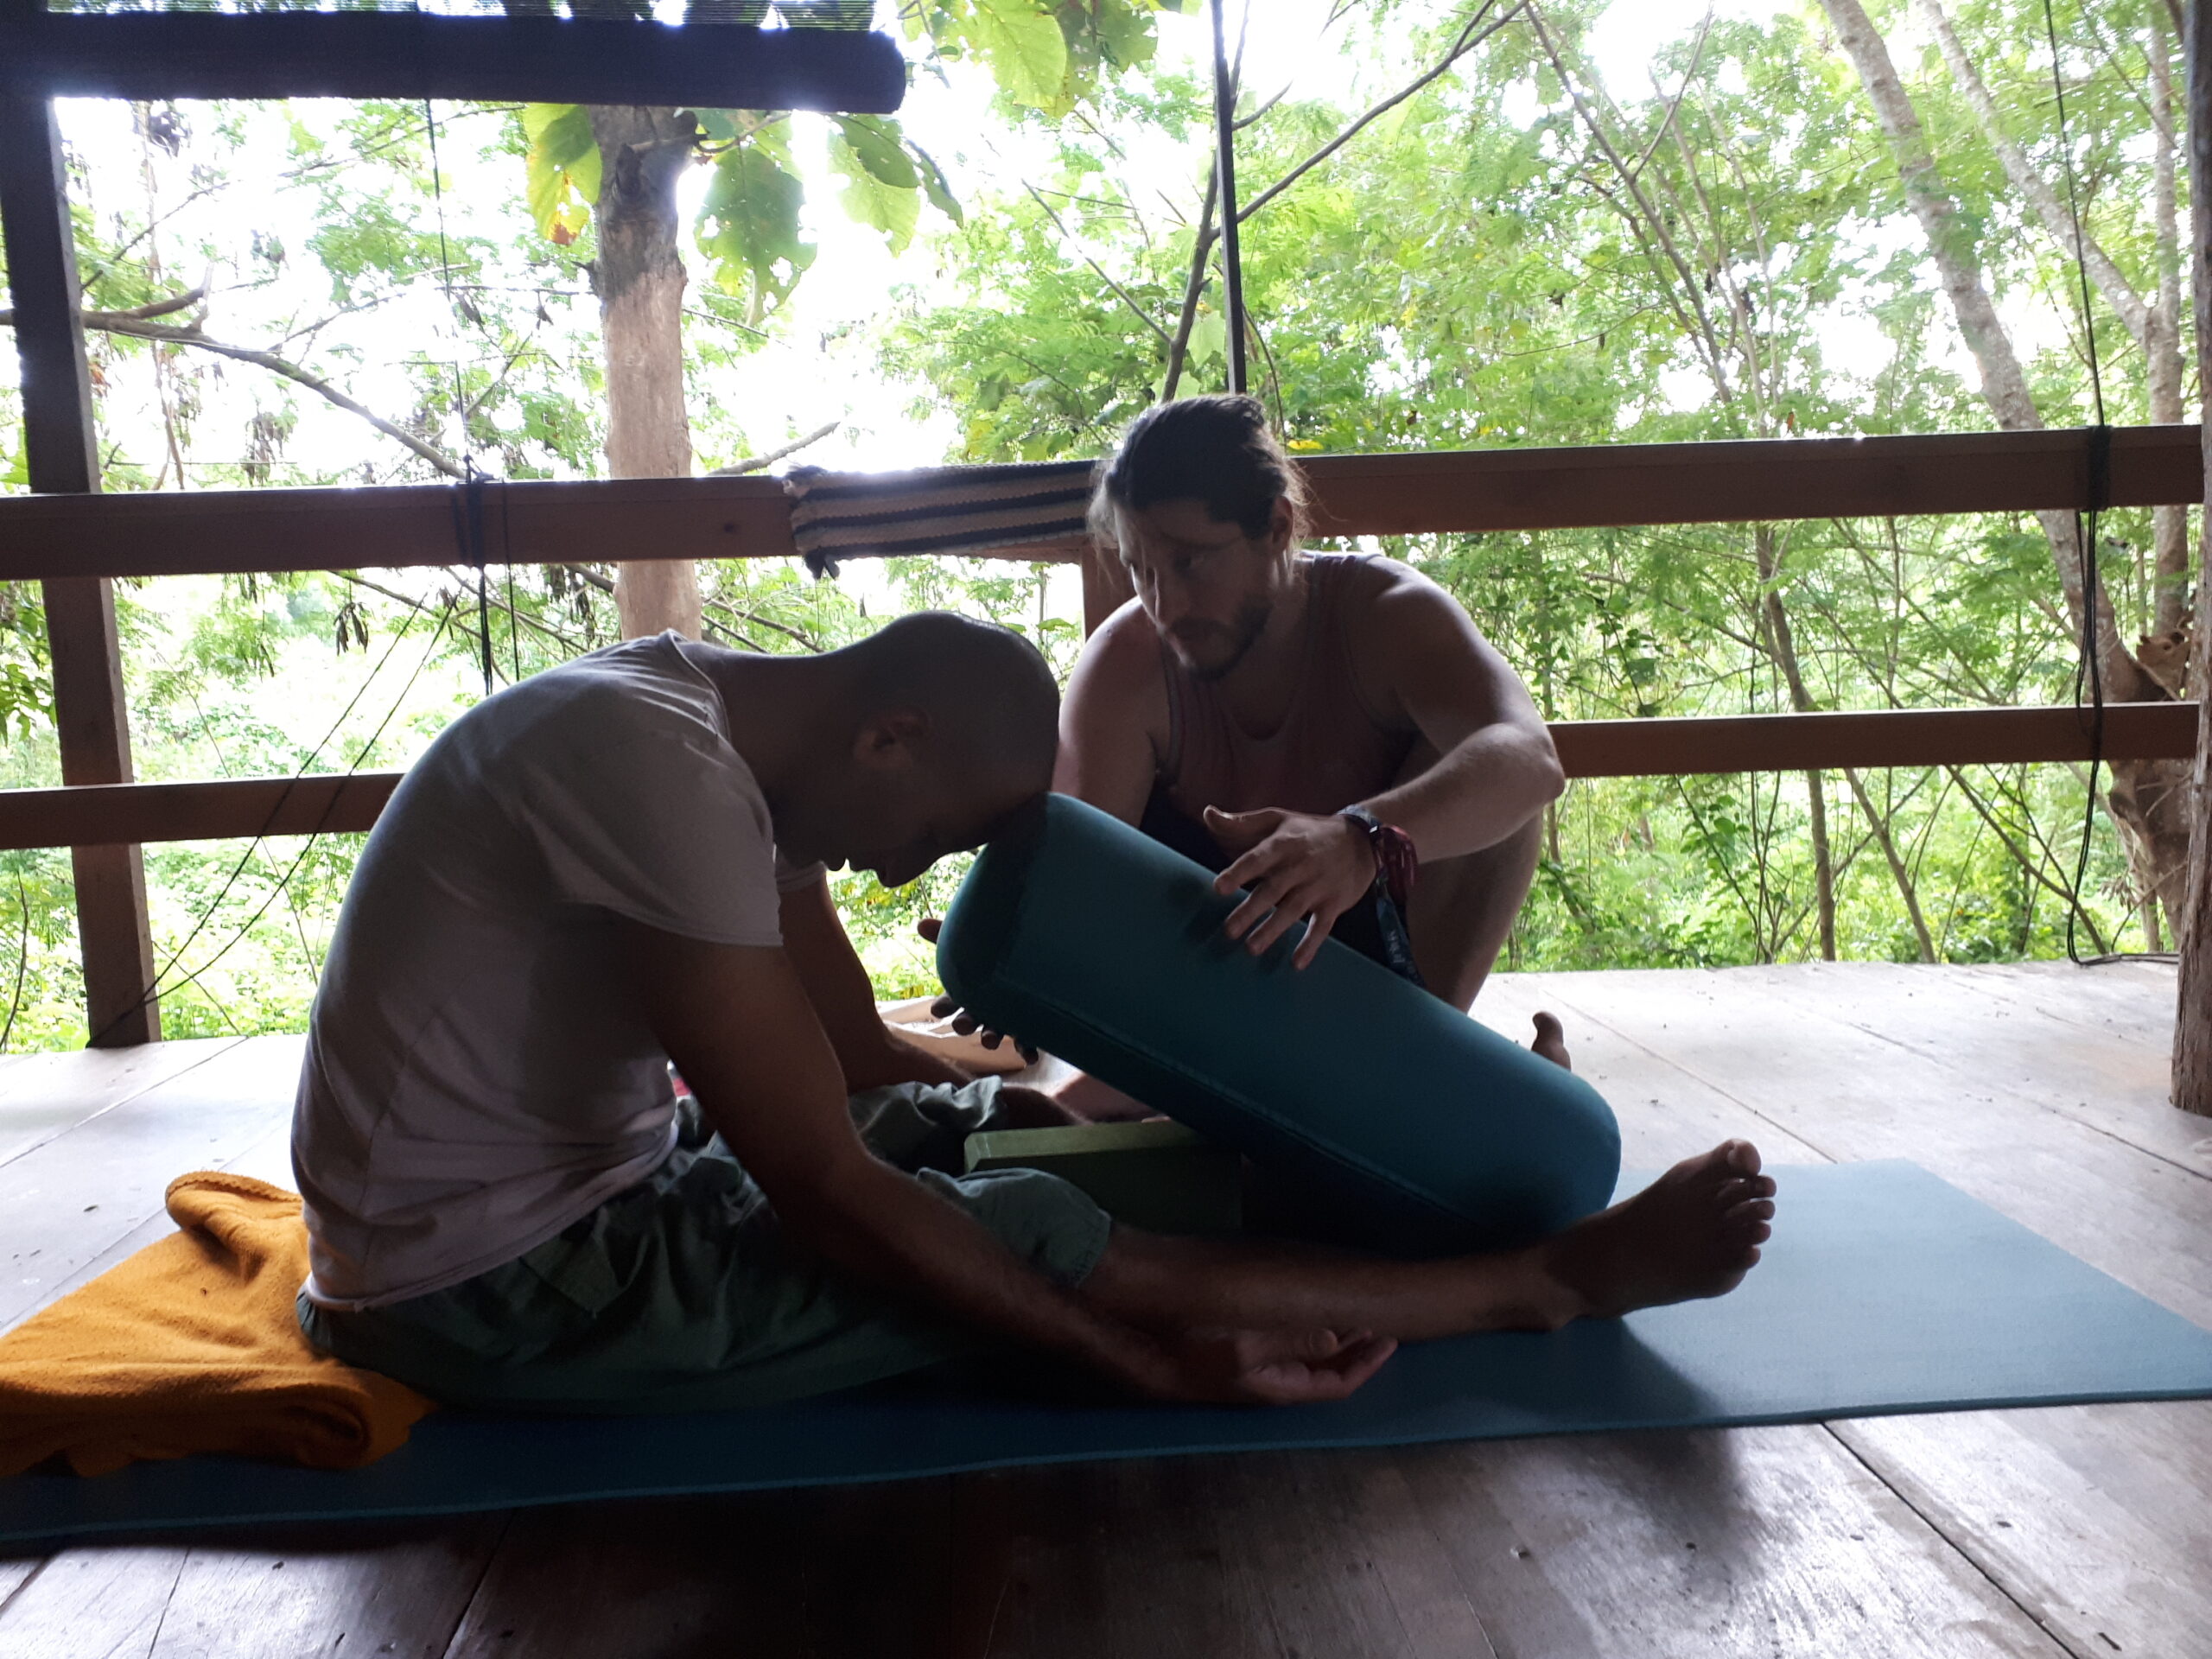 Using Props and Modifications in Yin Yoga - Shanti Atma Yoga : Yin